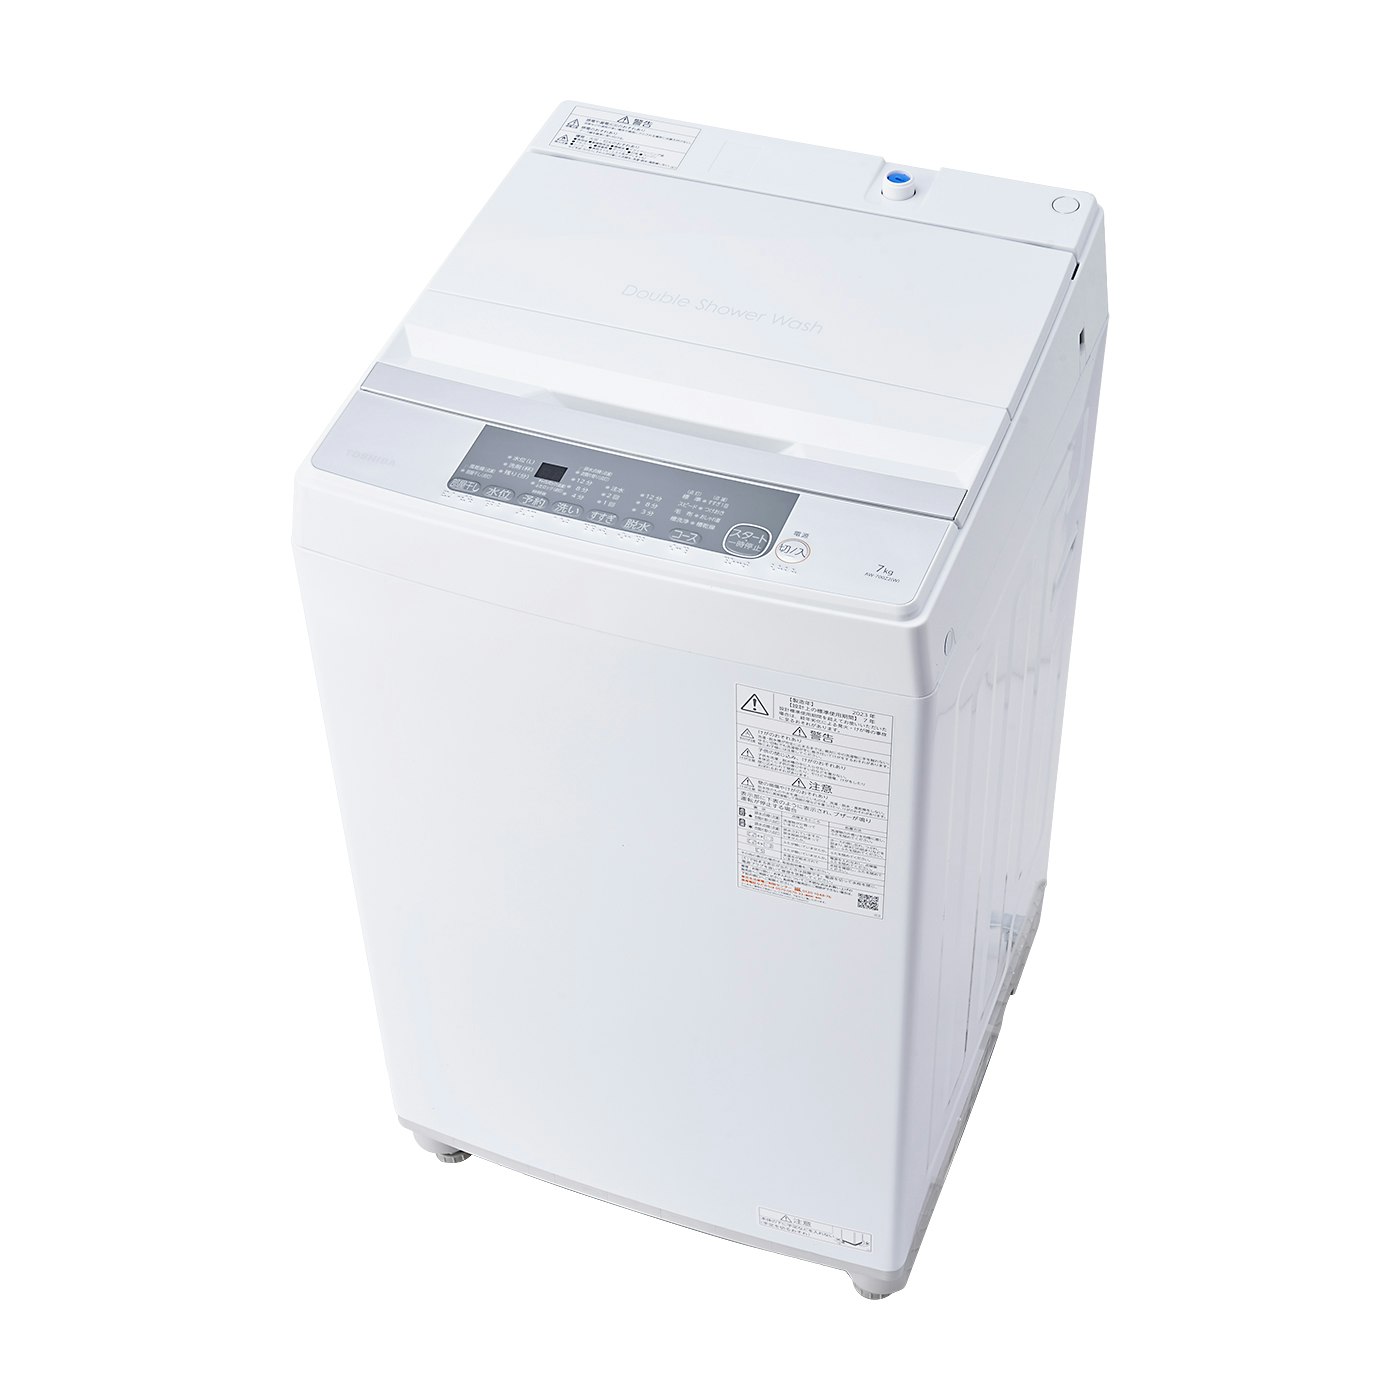 【特価HOT】kinokiyakikino様専用 東芝 全自動洗濯機 10kg AW-10M7 洗濯機